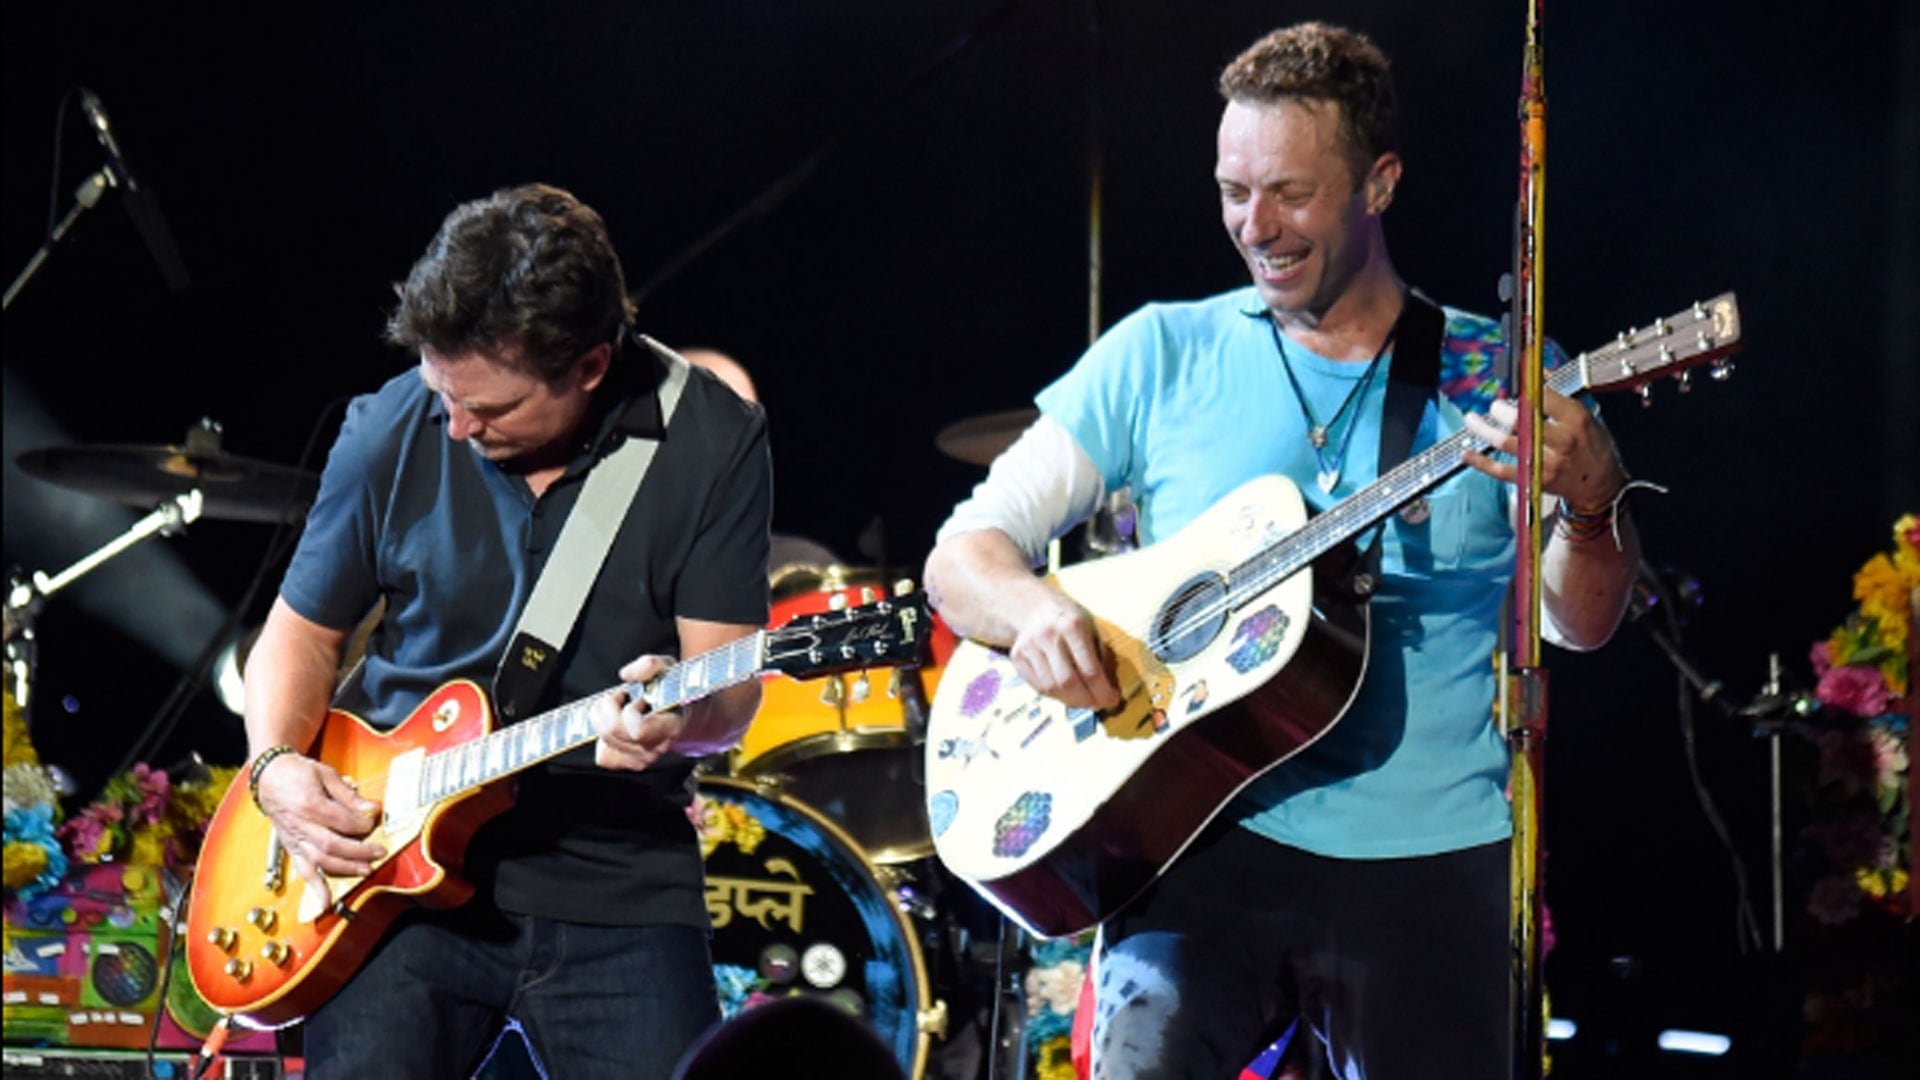 En 2016, Michael J. Fox y Coldplay colaboraron en la interpretación de “Johnny B. Goode” en el MetLife Stadium de Nueva Jersey. (Créditos: Infobae)